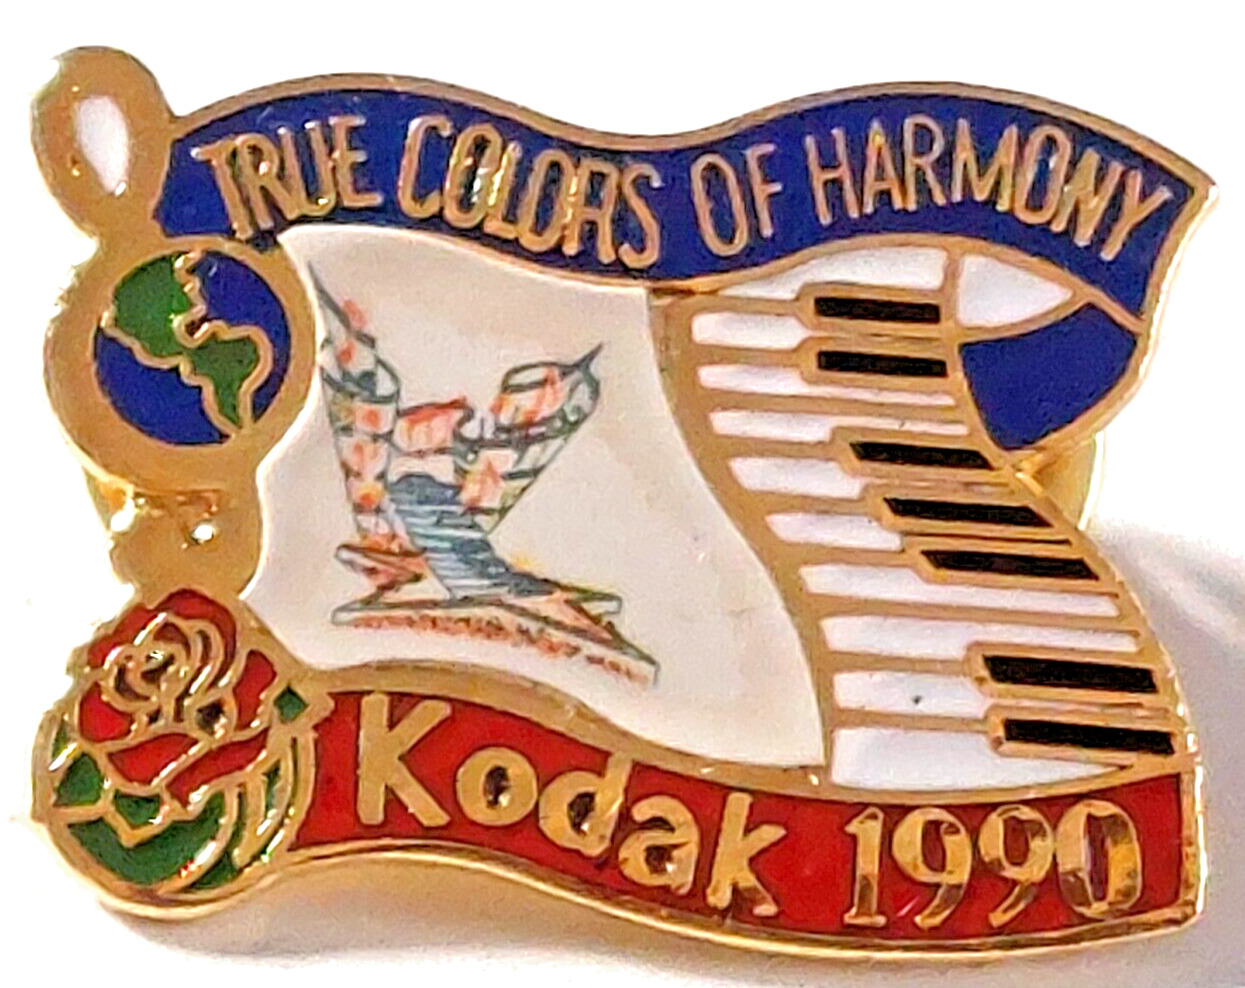 Rose Parade 1990 KODAK True Colors of Harmony101st TOR Lapel Pin (091423)